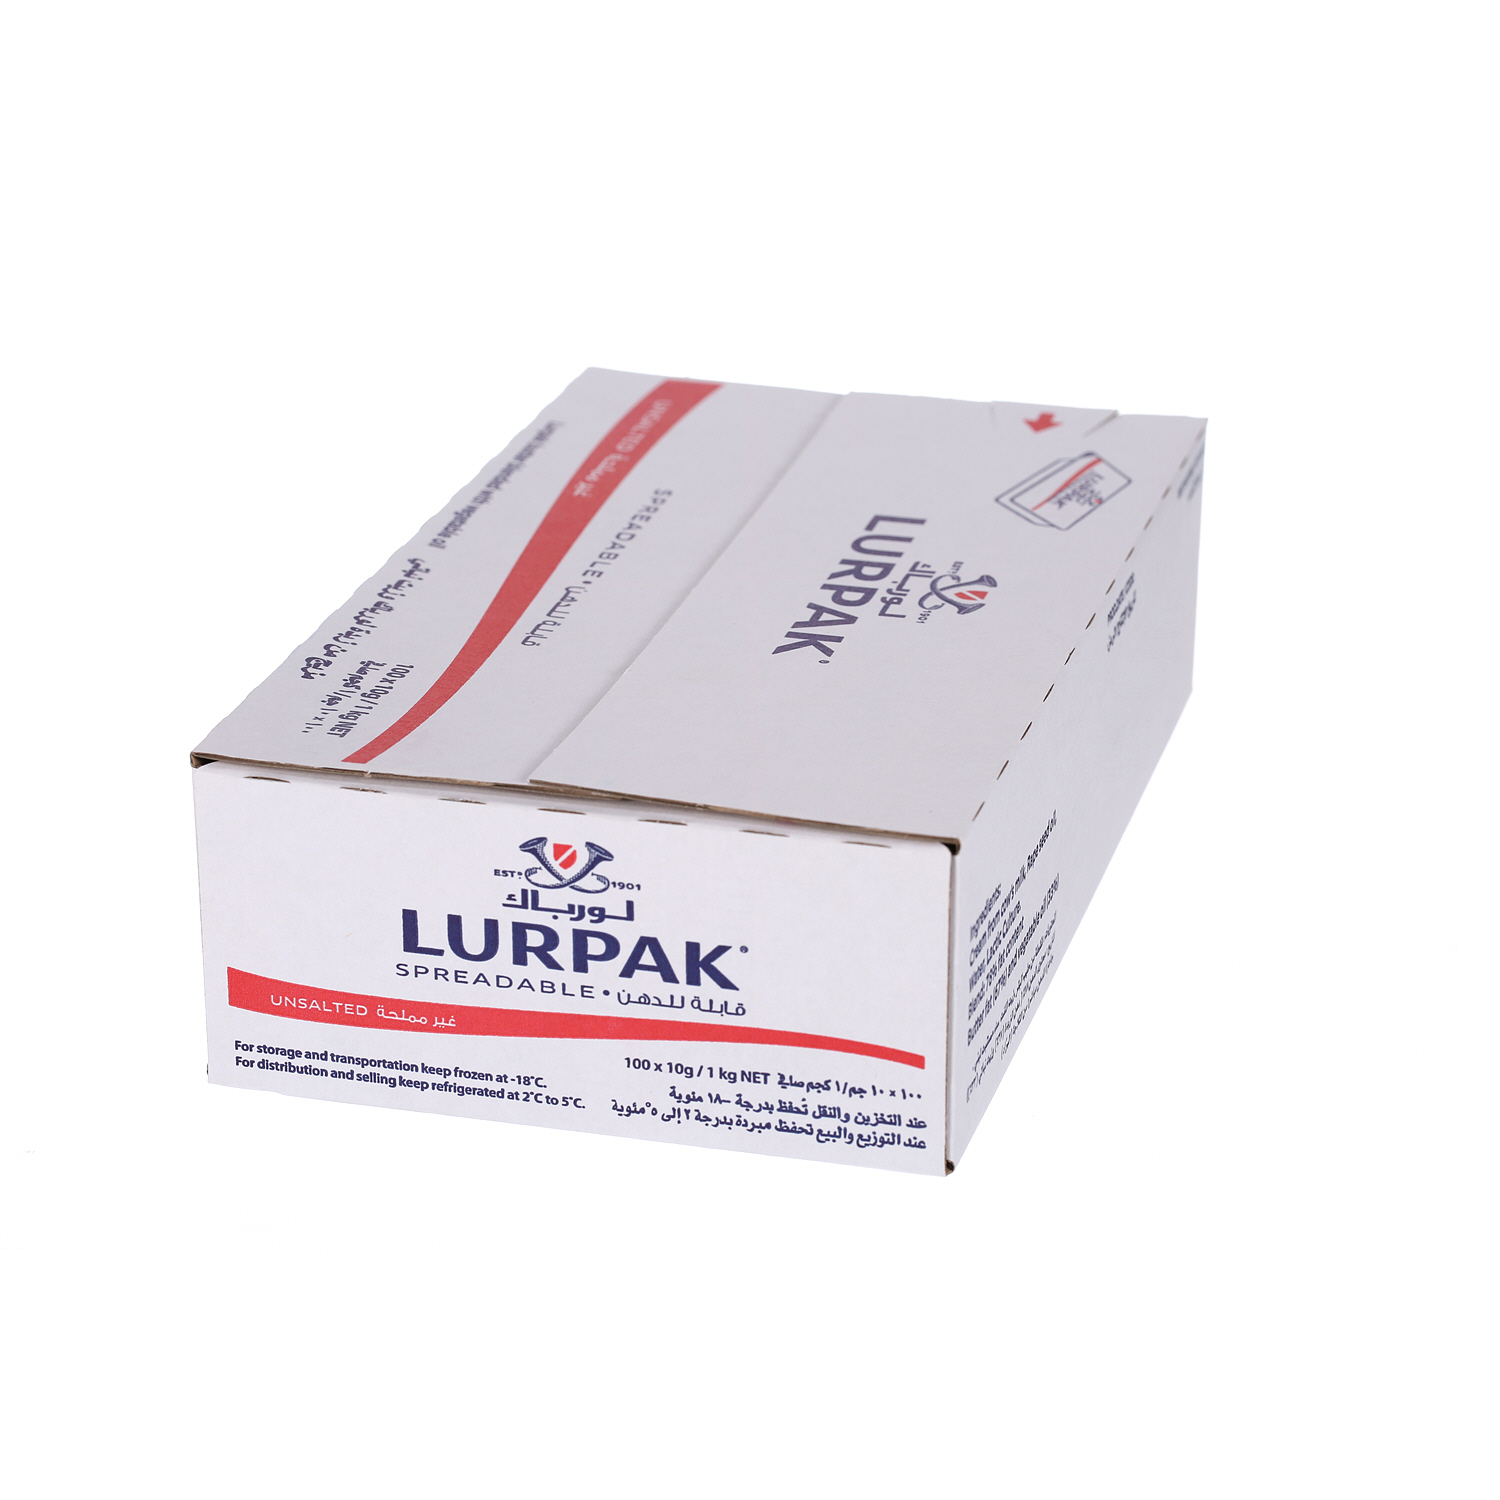 Lurpak Butter Soft Unsalted 100 x 10 g